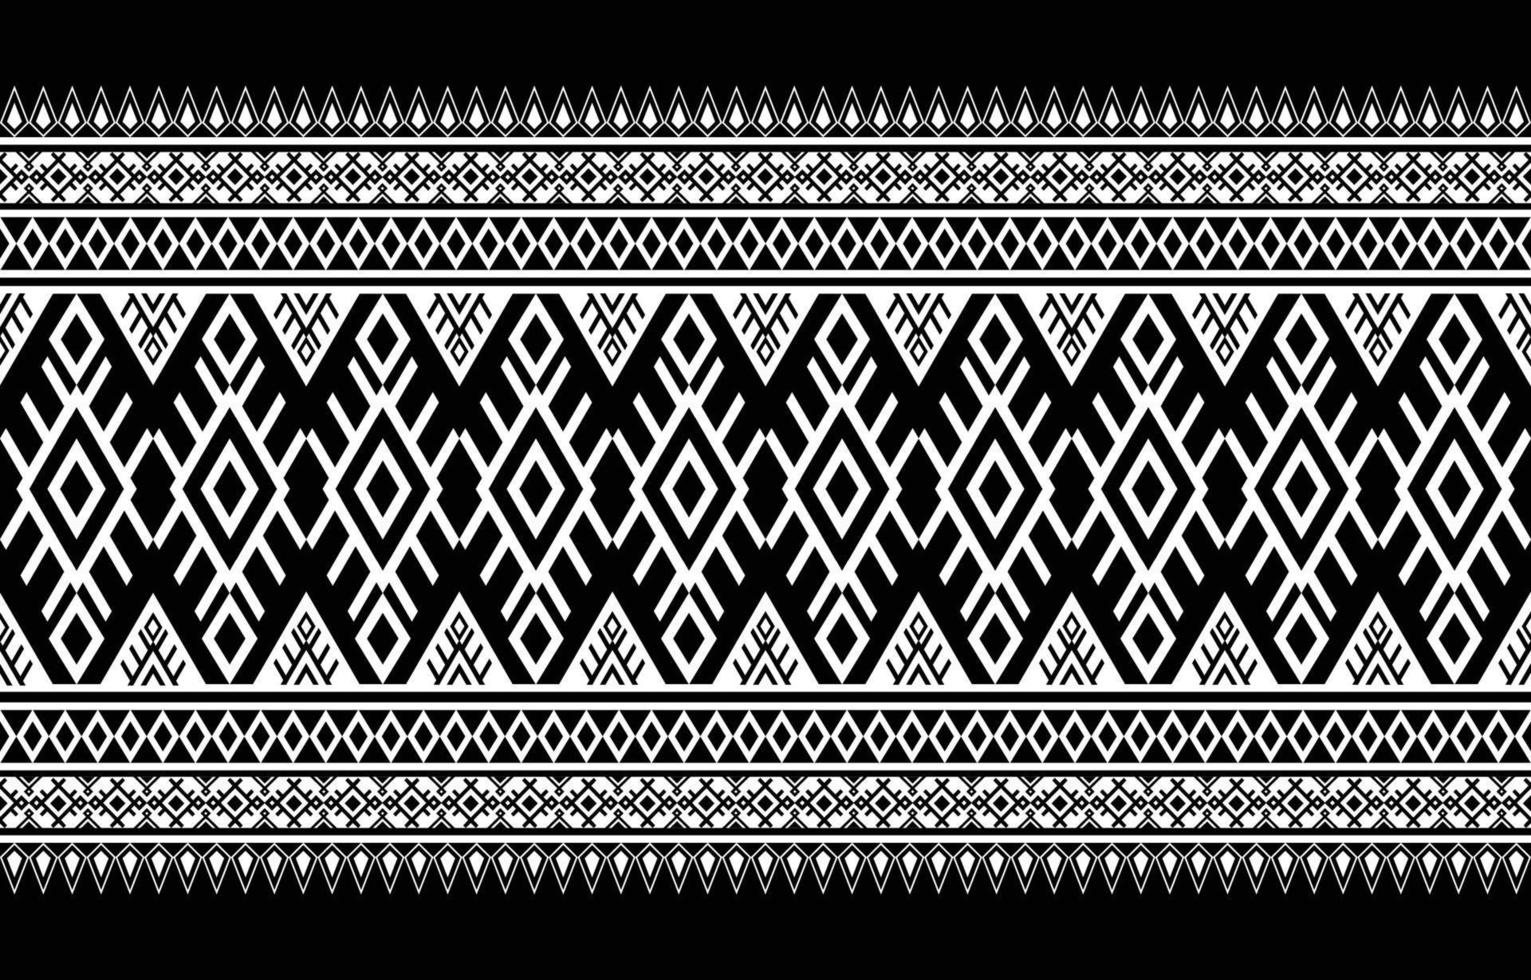 design de padrão de tecido americano. use a geometria para criar um padrão de tecido. design para indústria têxtil, fundo, carpete, papel de parede, roupas, batik e tecido étnico. vetor